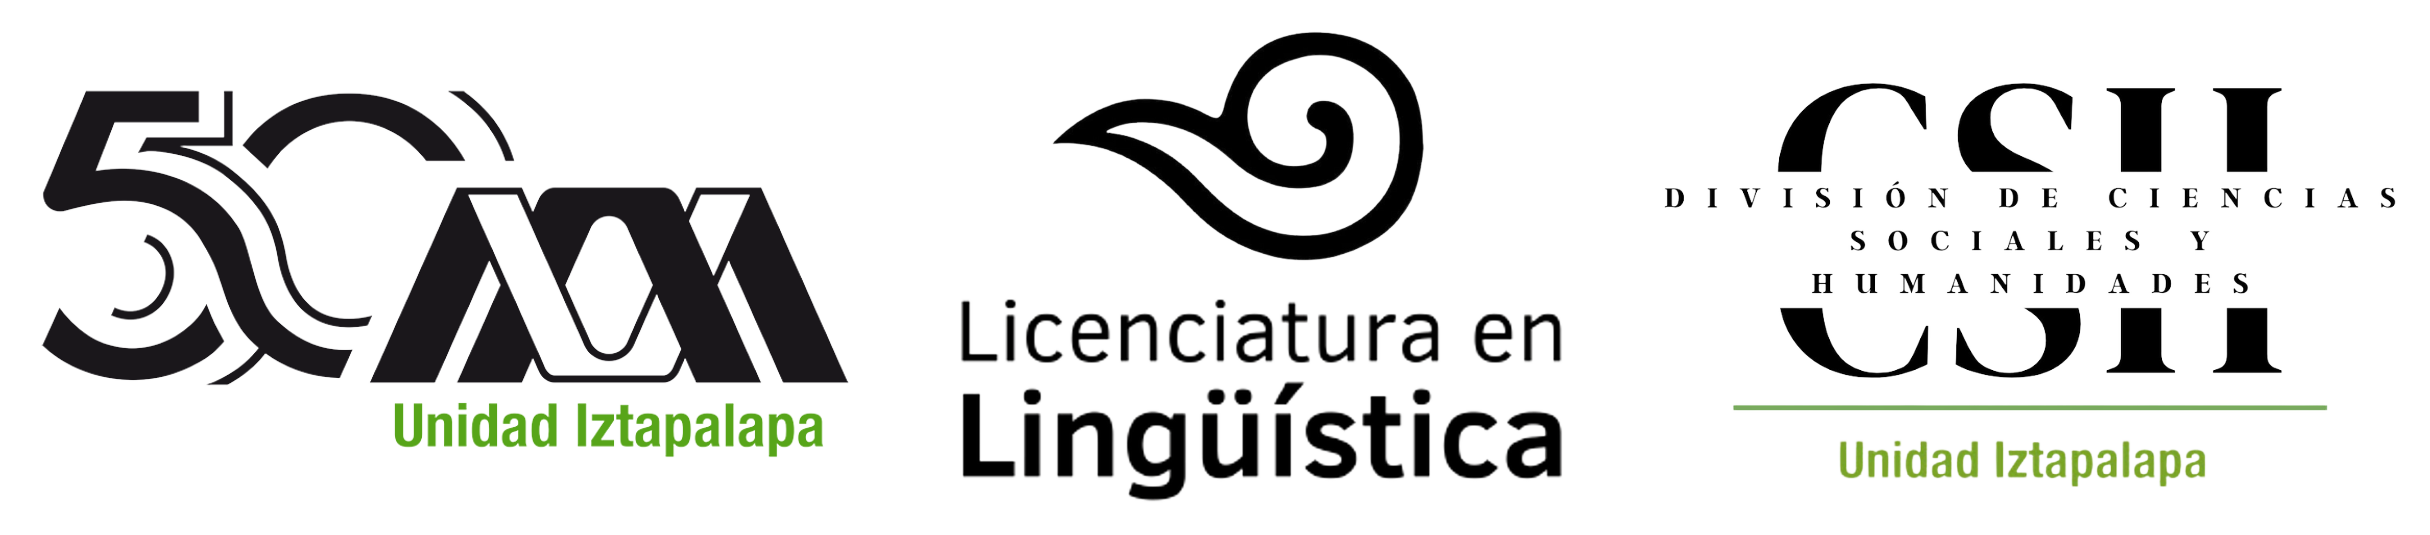 Licenciatura en Lingüística